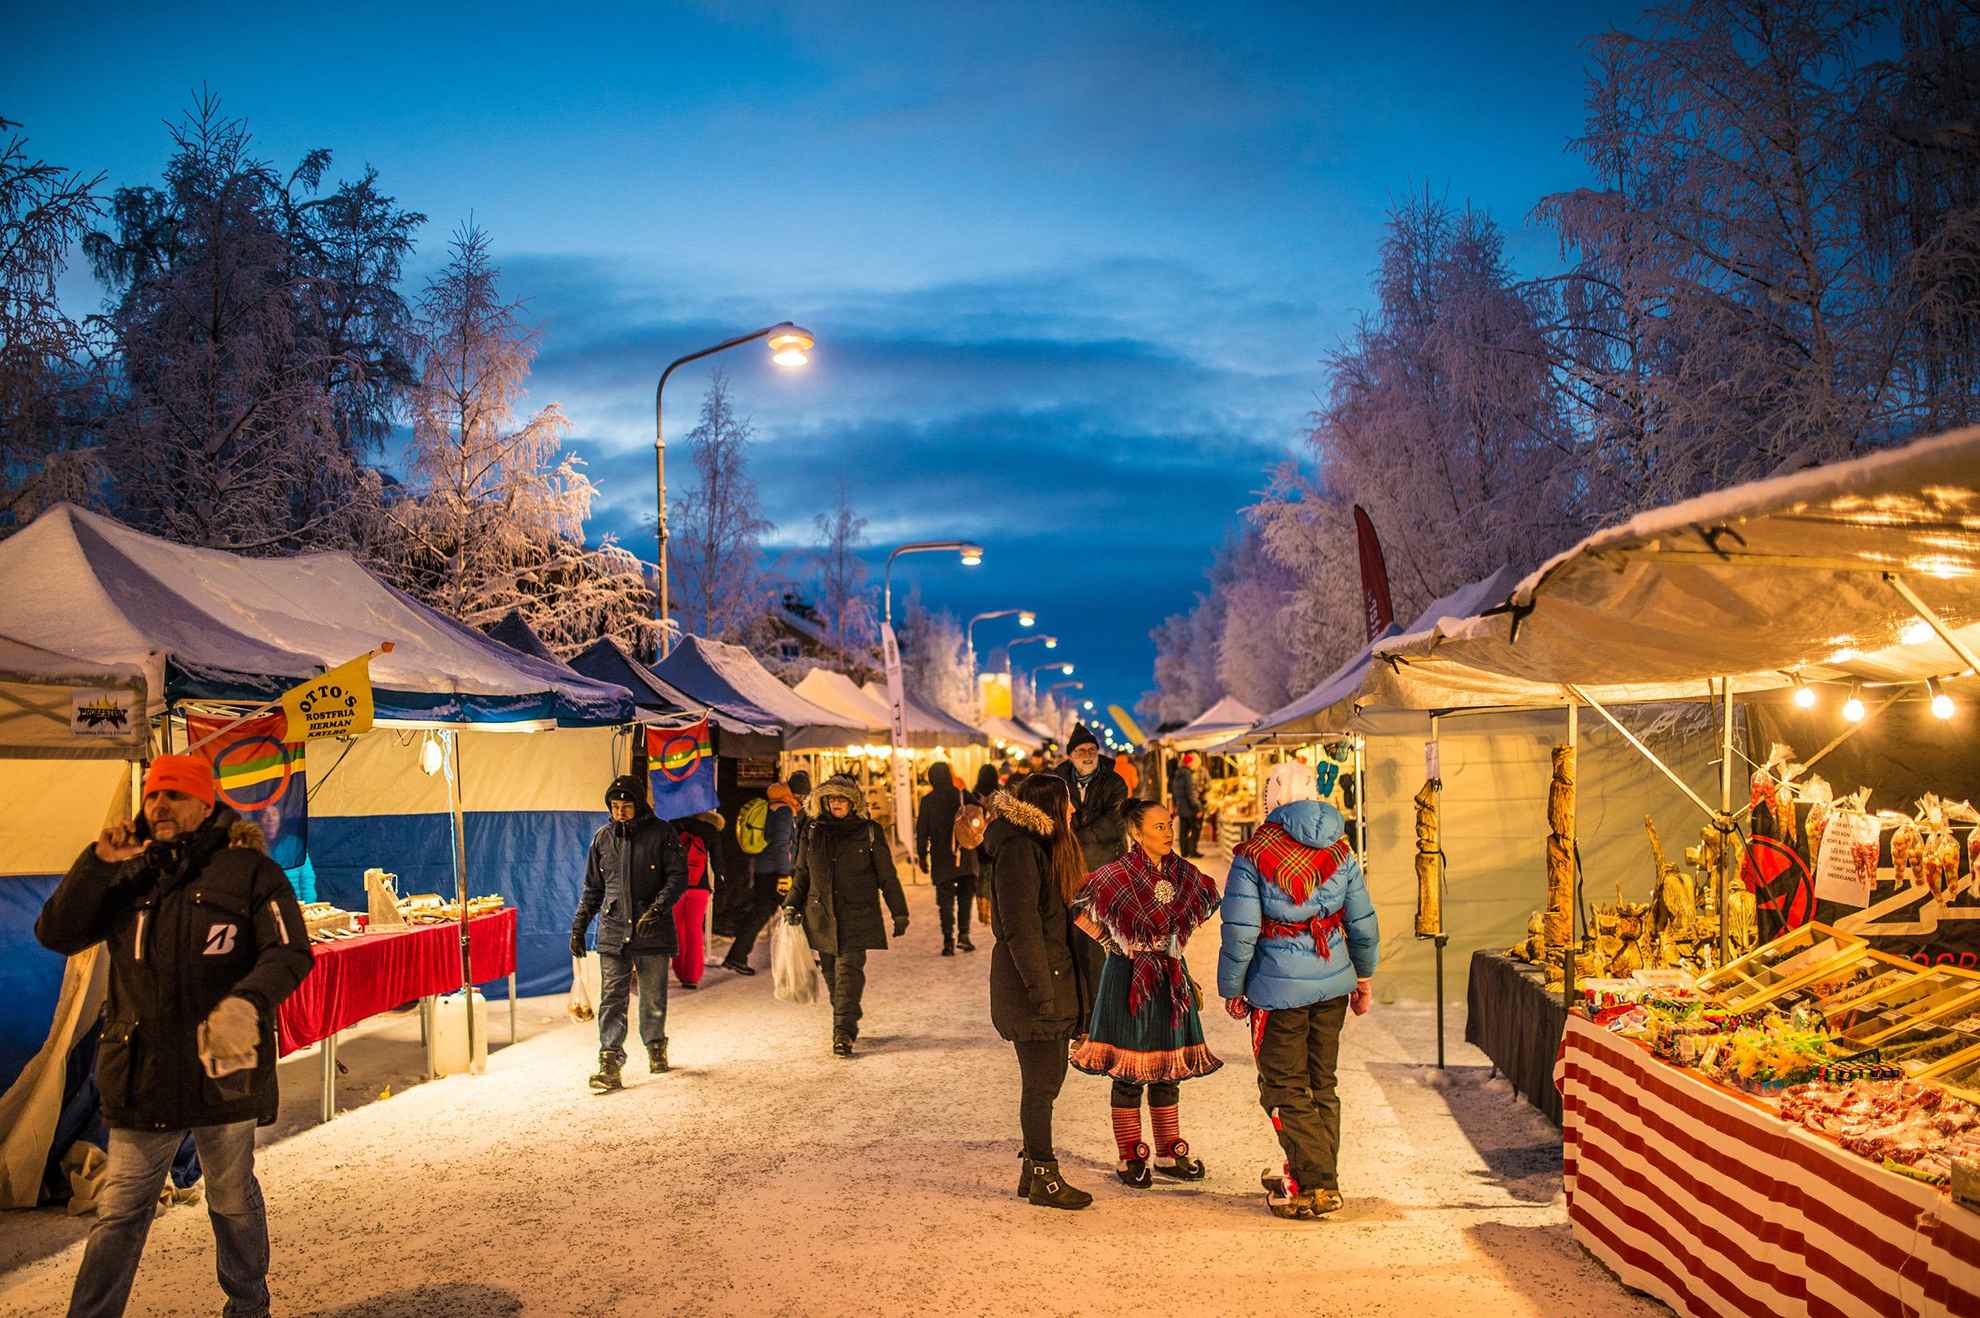 Mensen op een openluchtmarkt in de sneeuw.